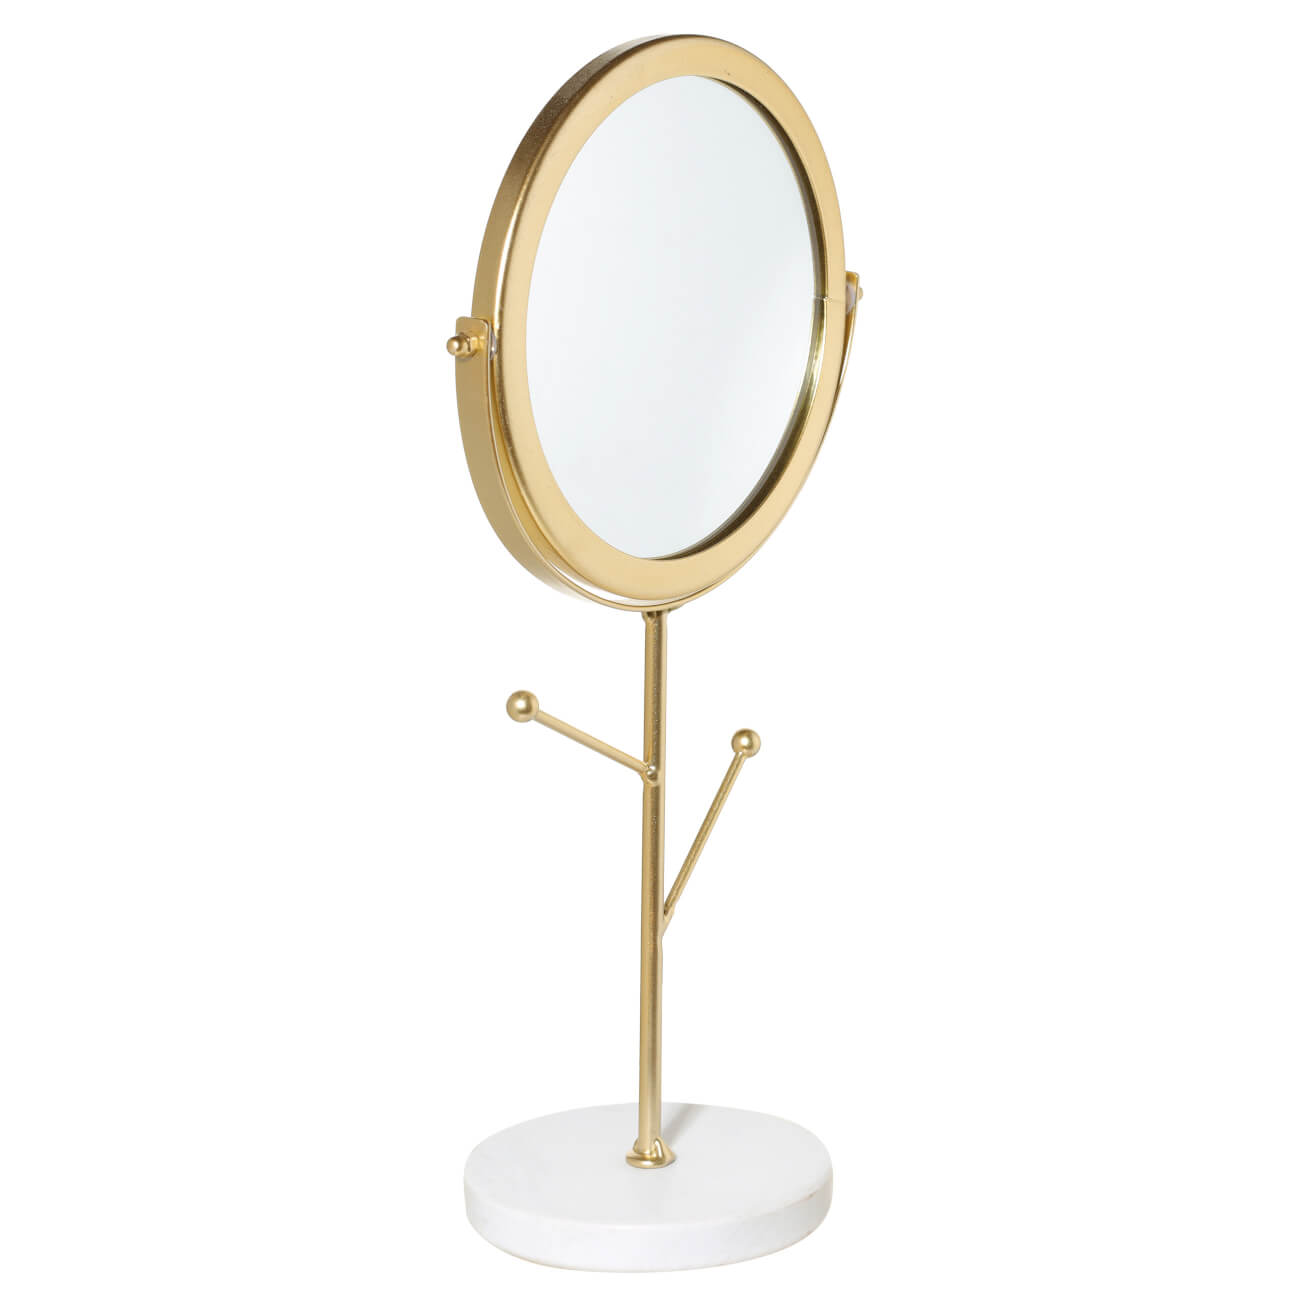 Зеркало настольное, 30 см, на ножке, с держателями для украшений, металл, золотистое, Maniera изображение № 1